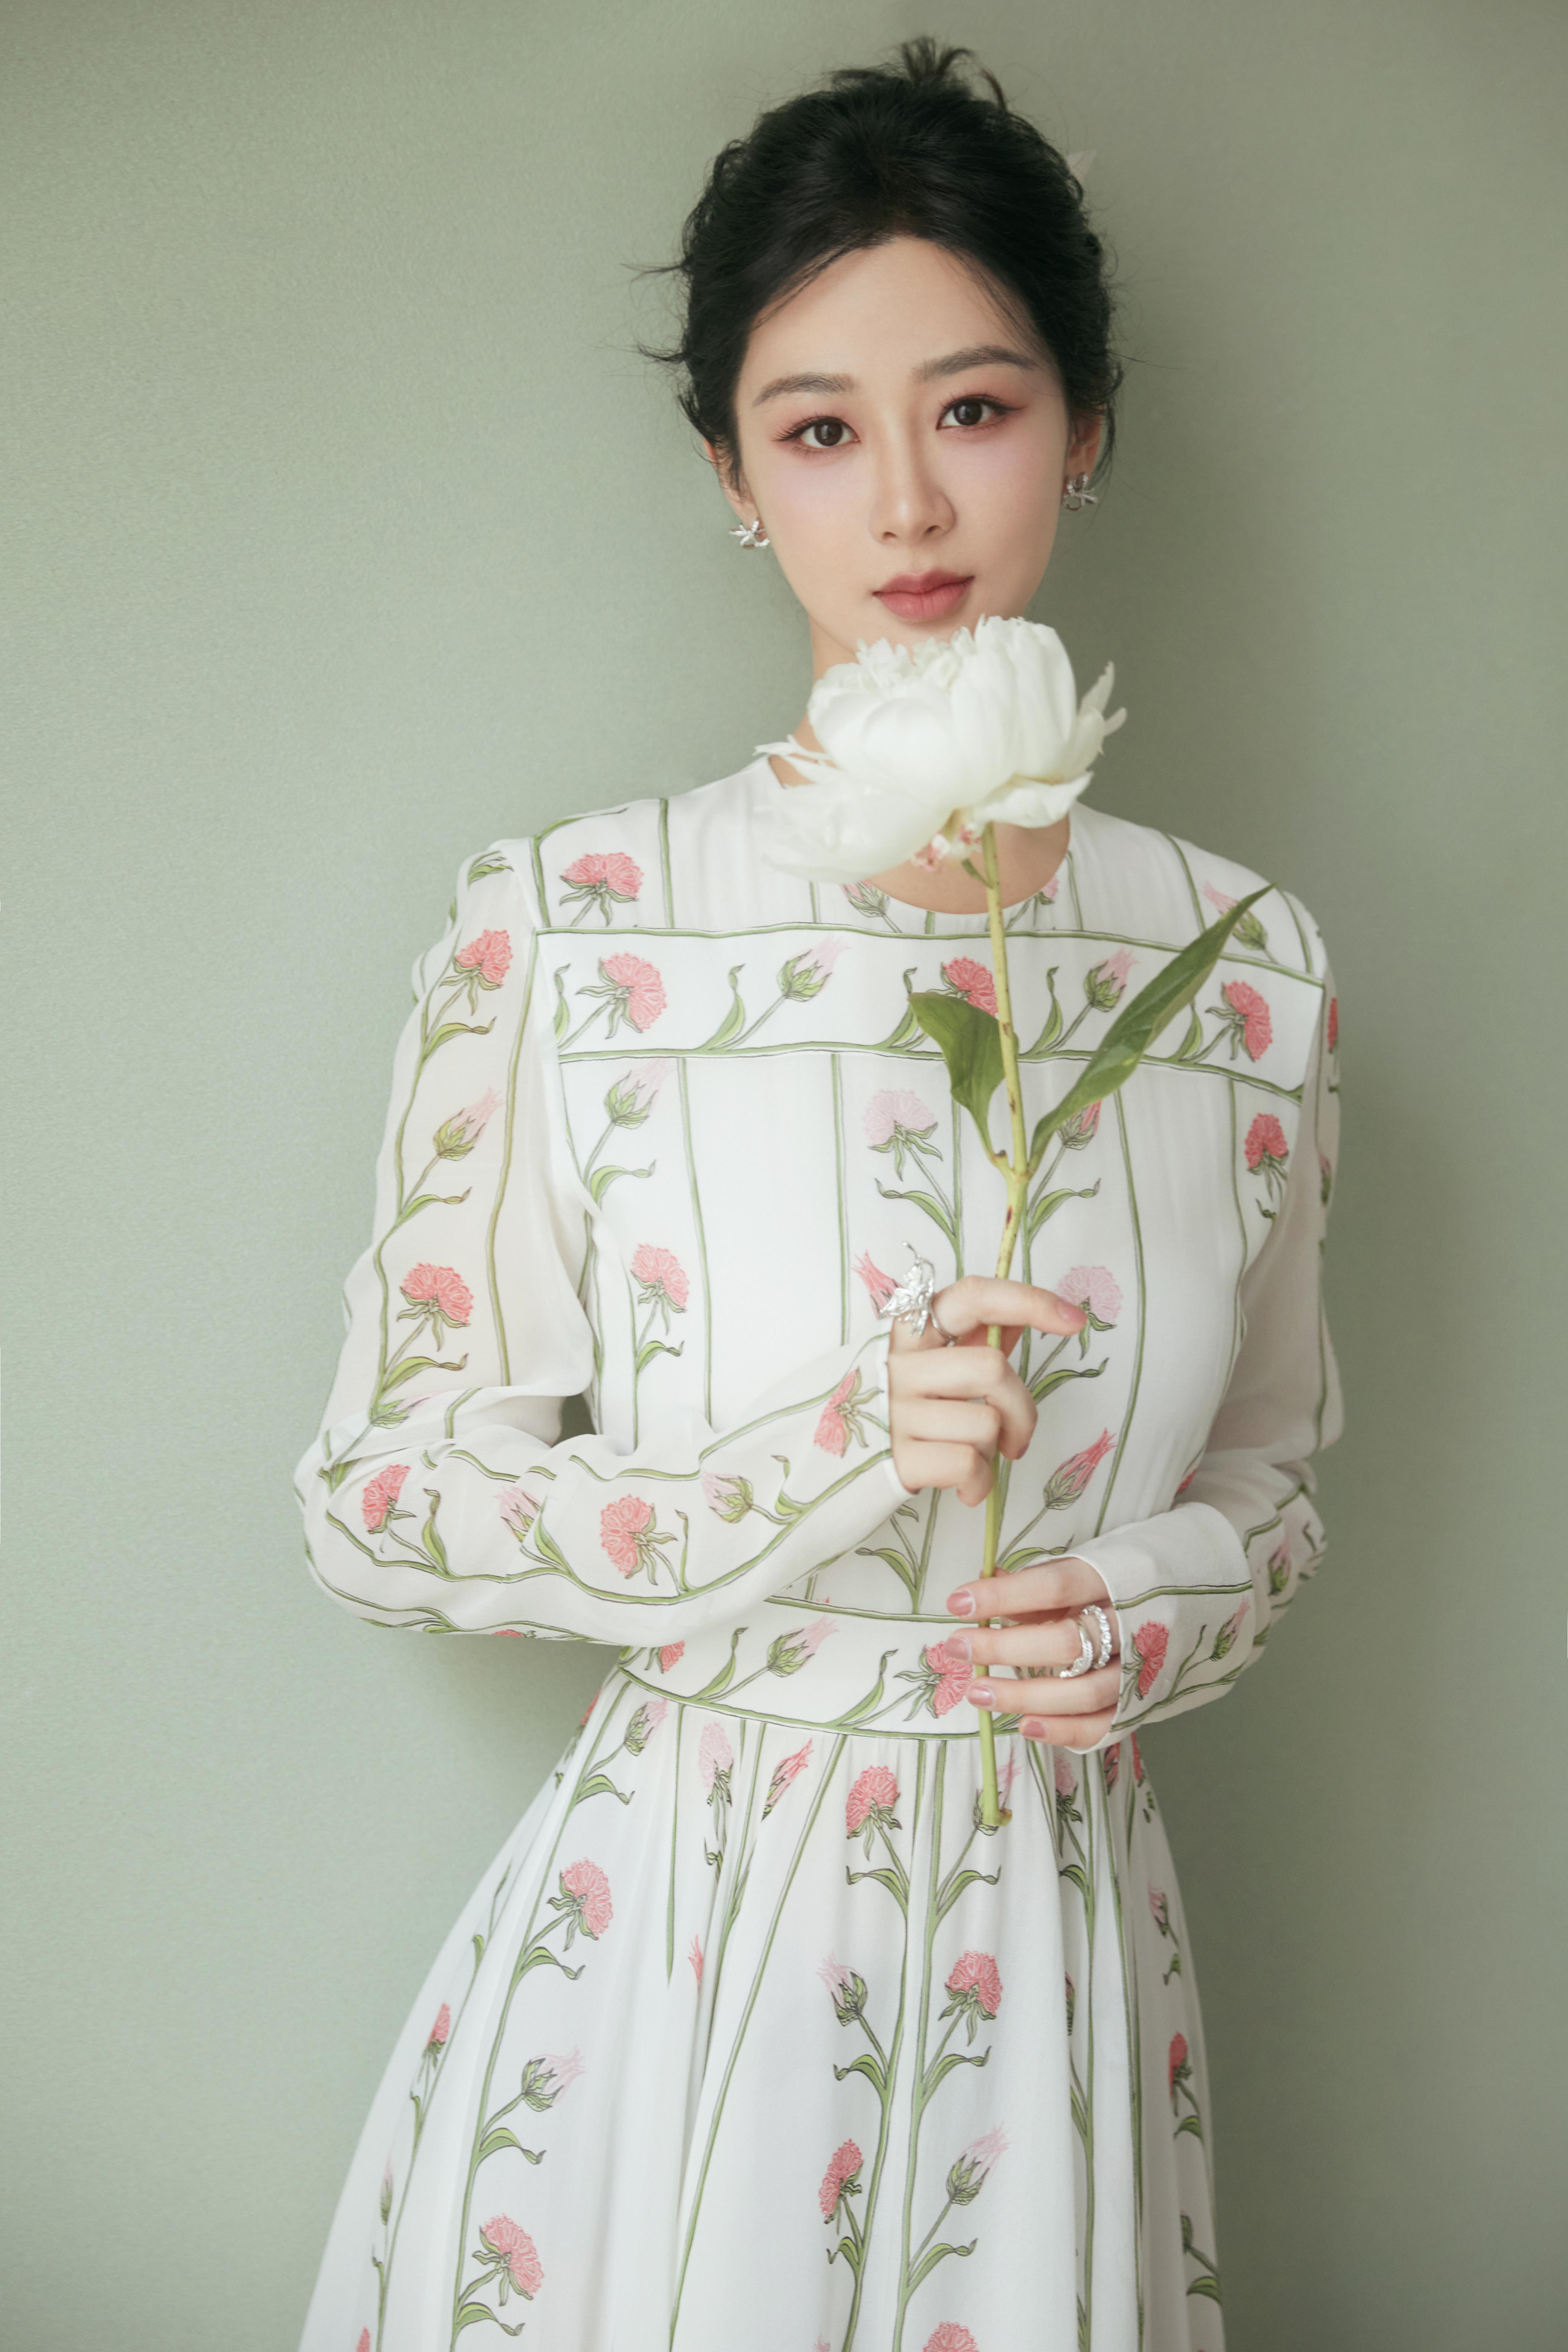 杨紫白色印花长裙盘发造型优雅动人 手持鲜花合影人比花娇,1 (5)